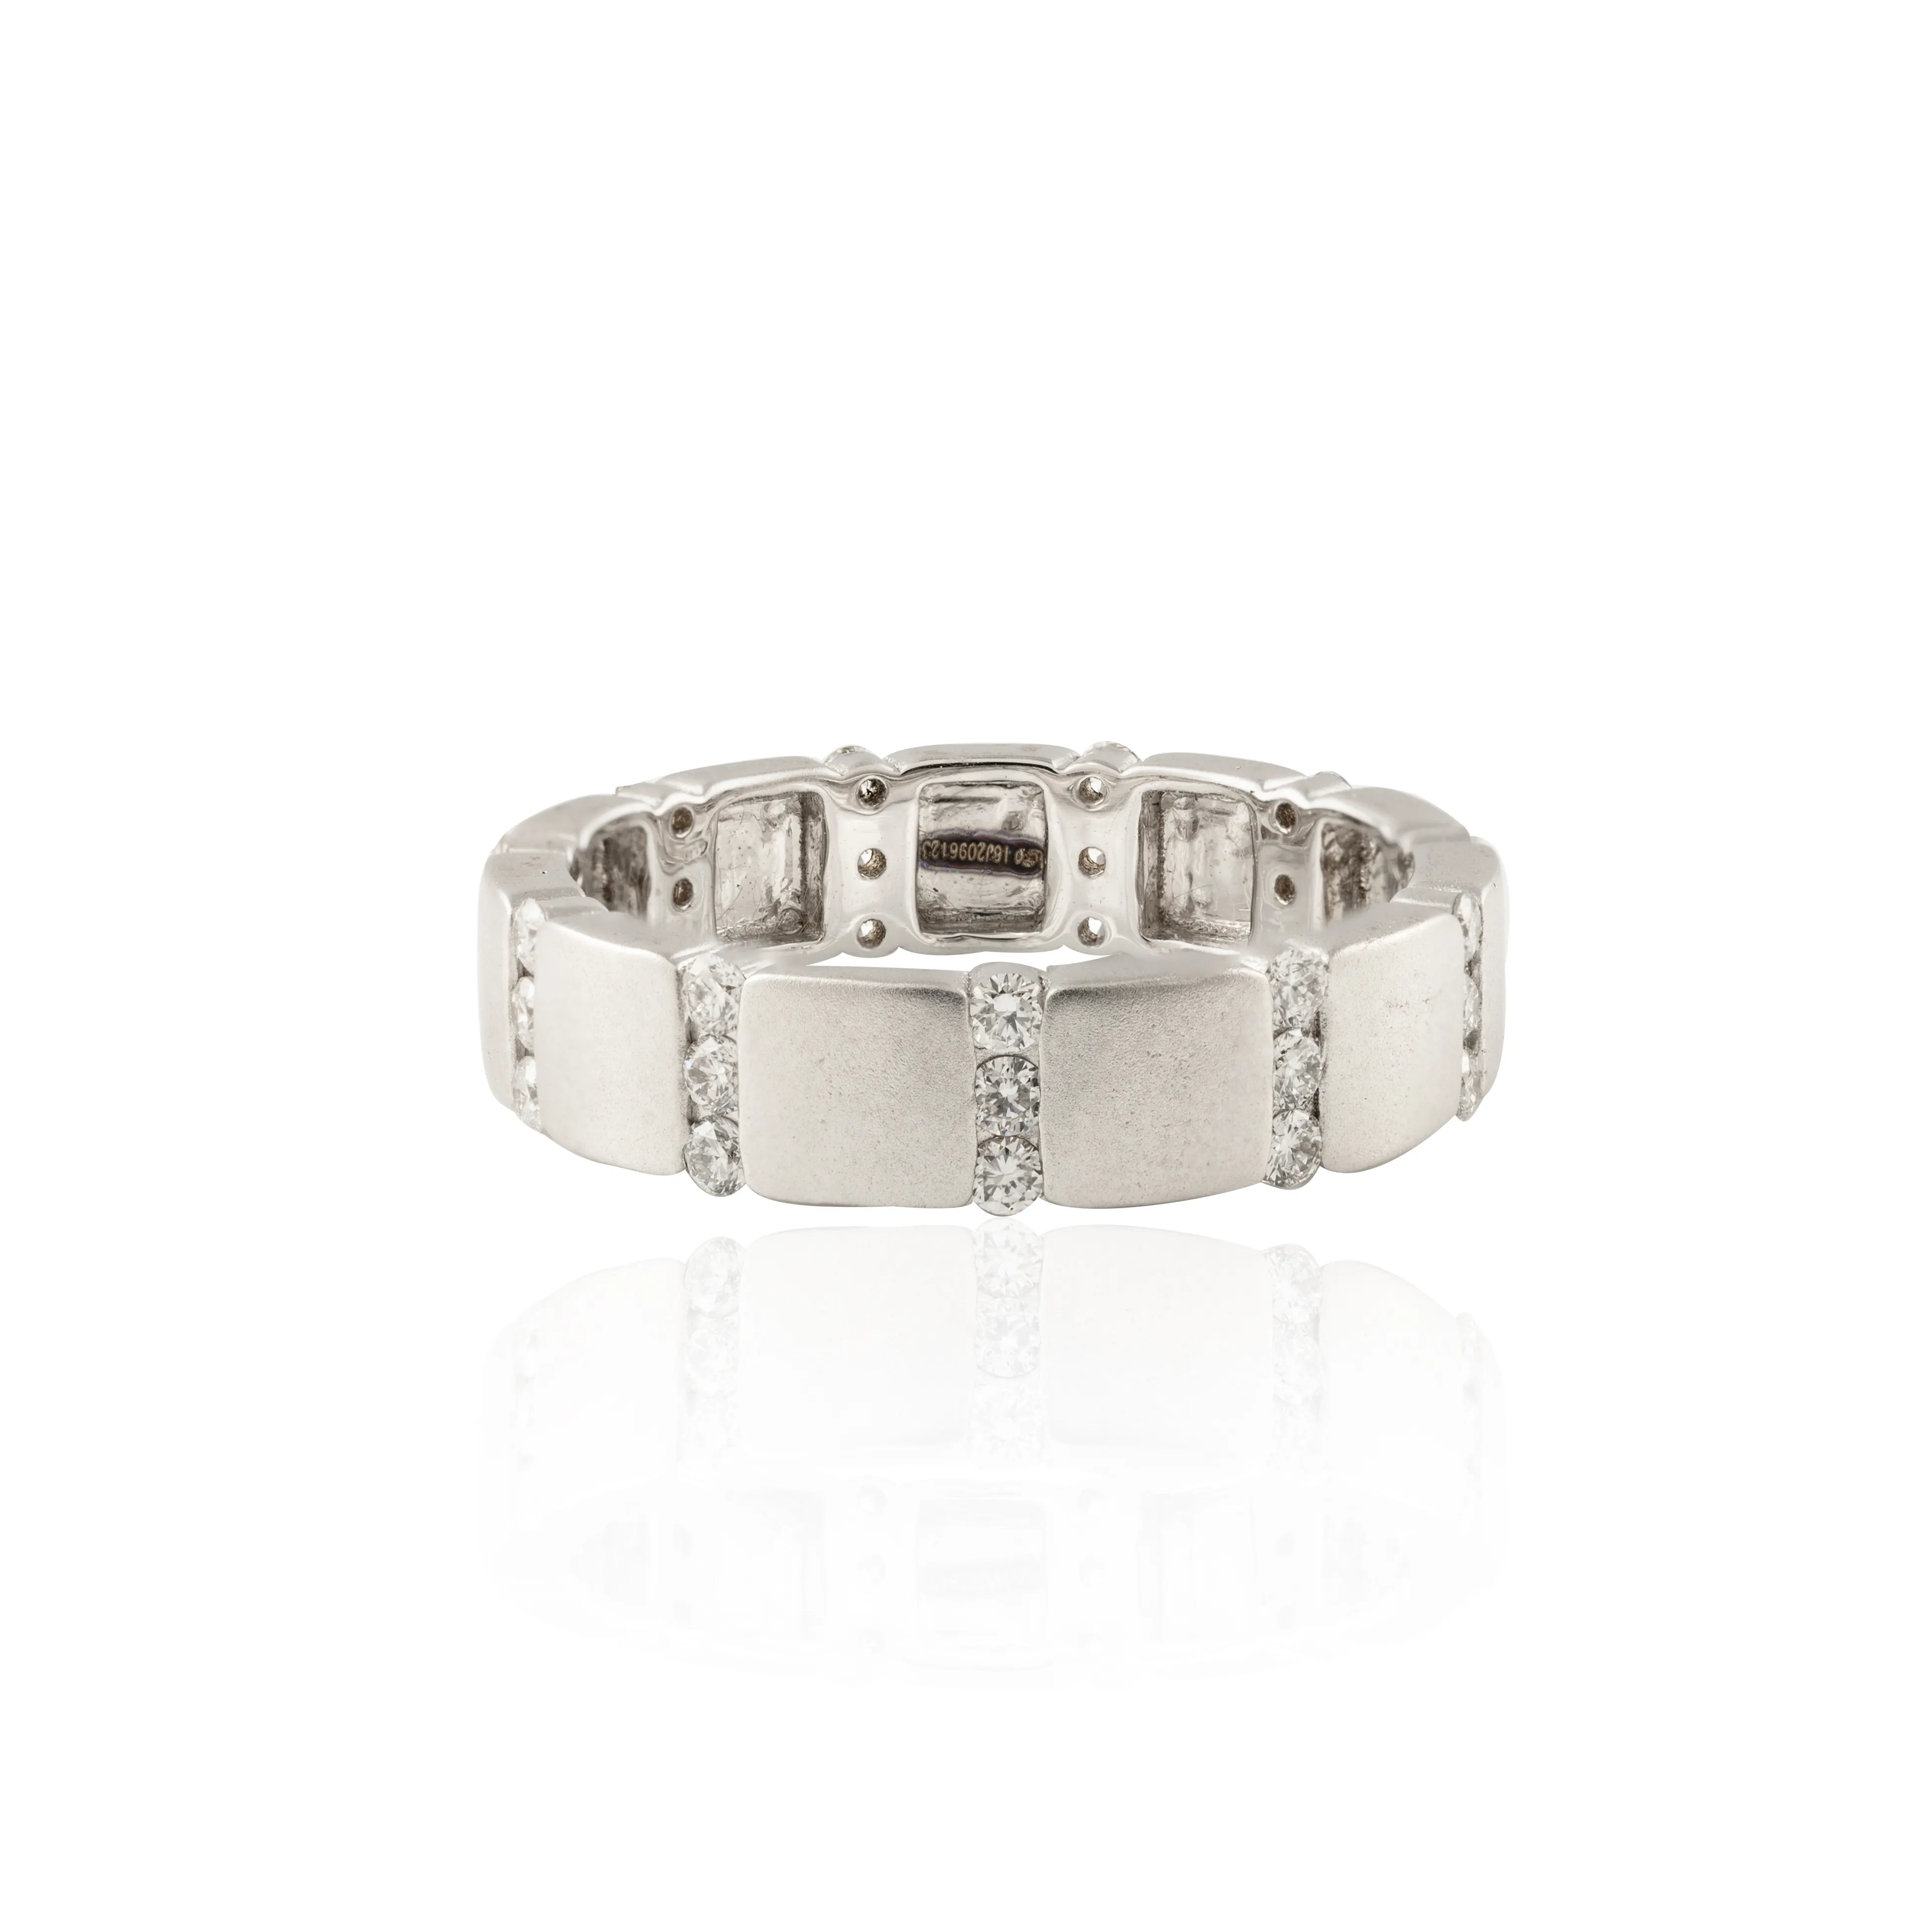 Neue Neueste Kollektion handgefertigter 100 % Authenter echter Diamant Ewigkeit-Armband Ring 18k solider weißer Goldschmuck für Damen Mädchen